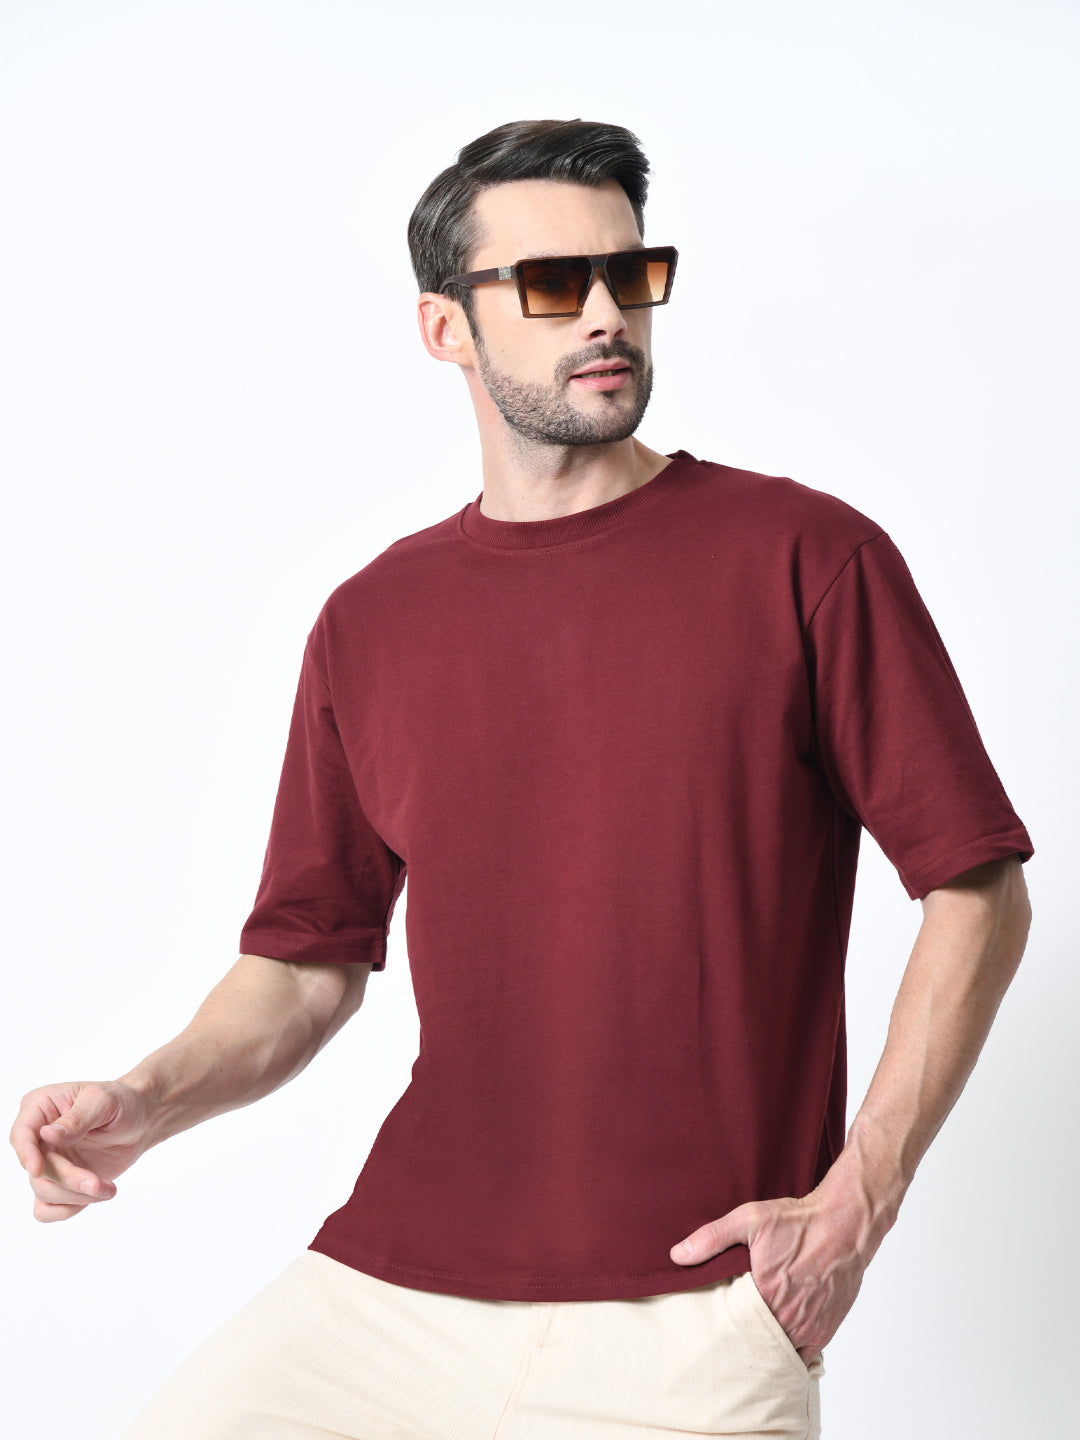 Be Yourself Burgundy Unisex Oversized T-Shirt